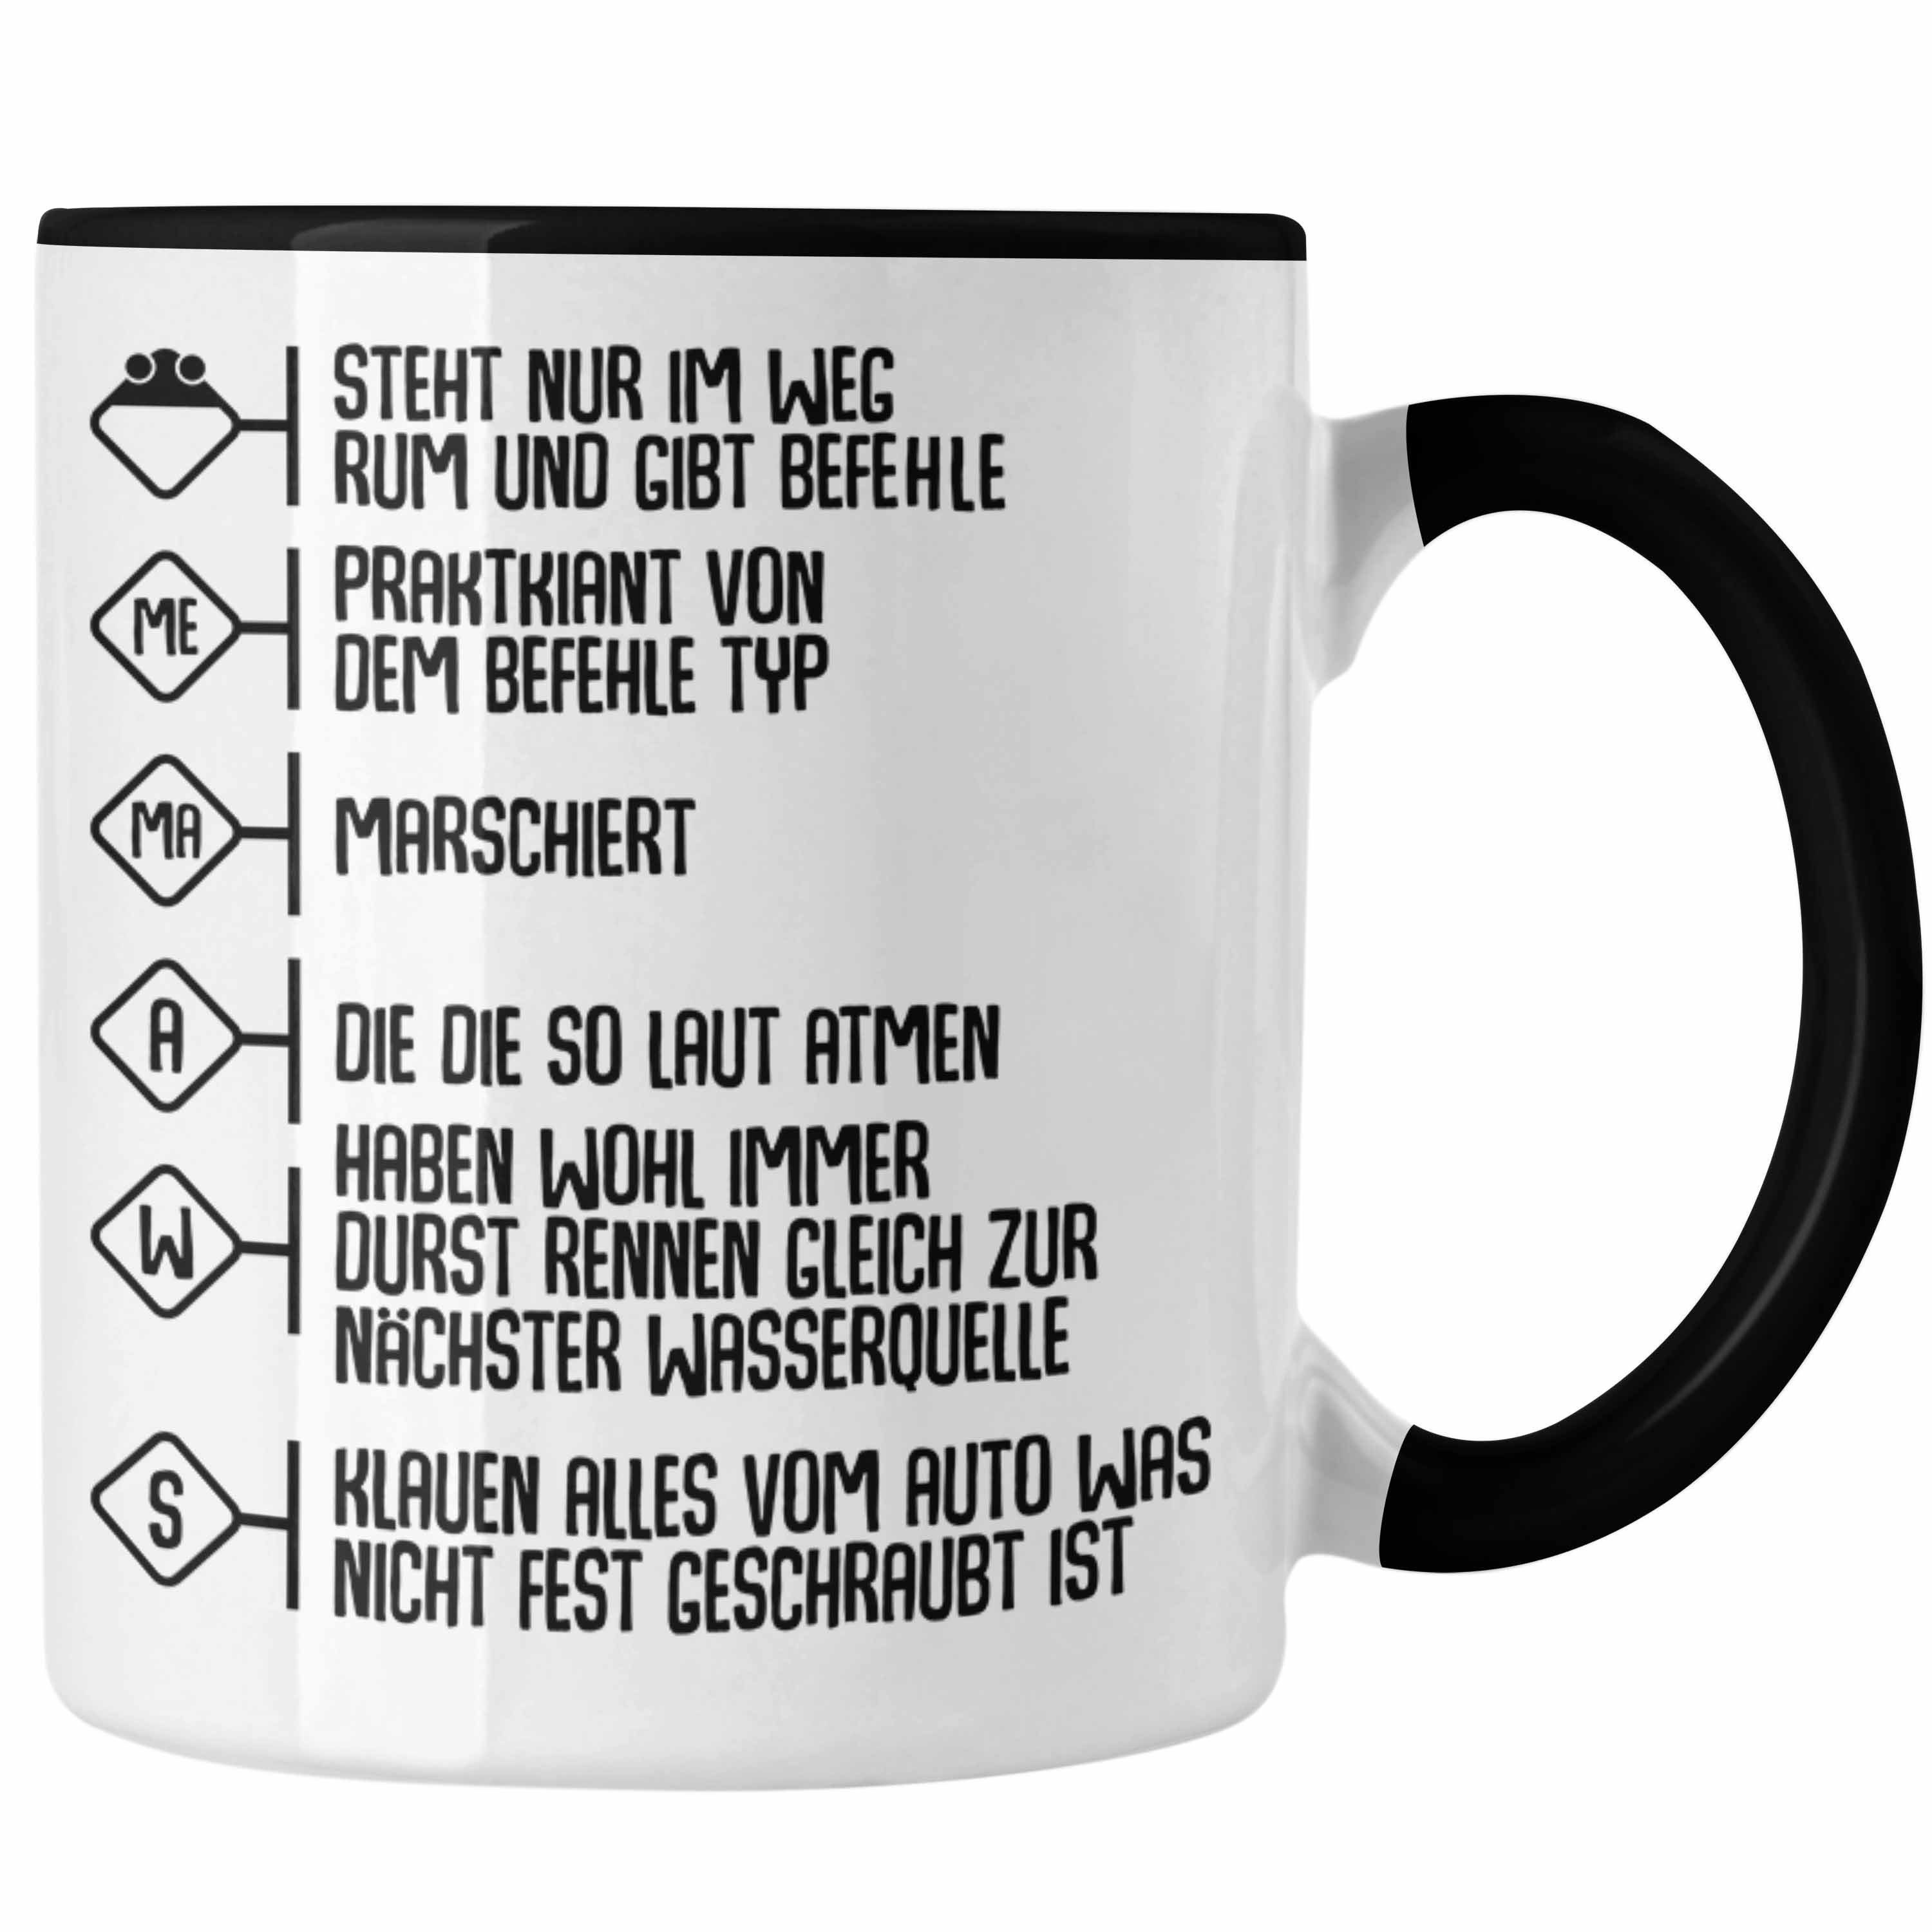 Zubehör Lustig - Praktikant Trendation Schwarz Geschenke Tasse Tasse Einsatz Feuerwehr Trendation Geburtstag Mann Spruch